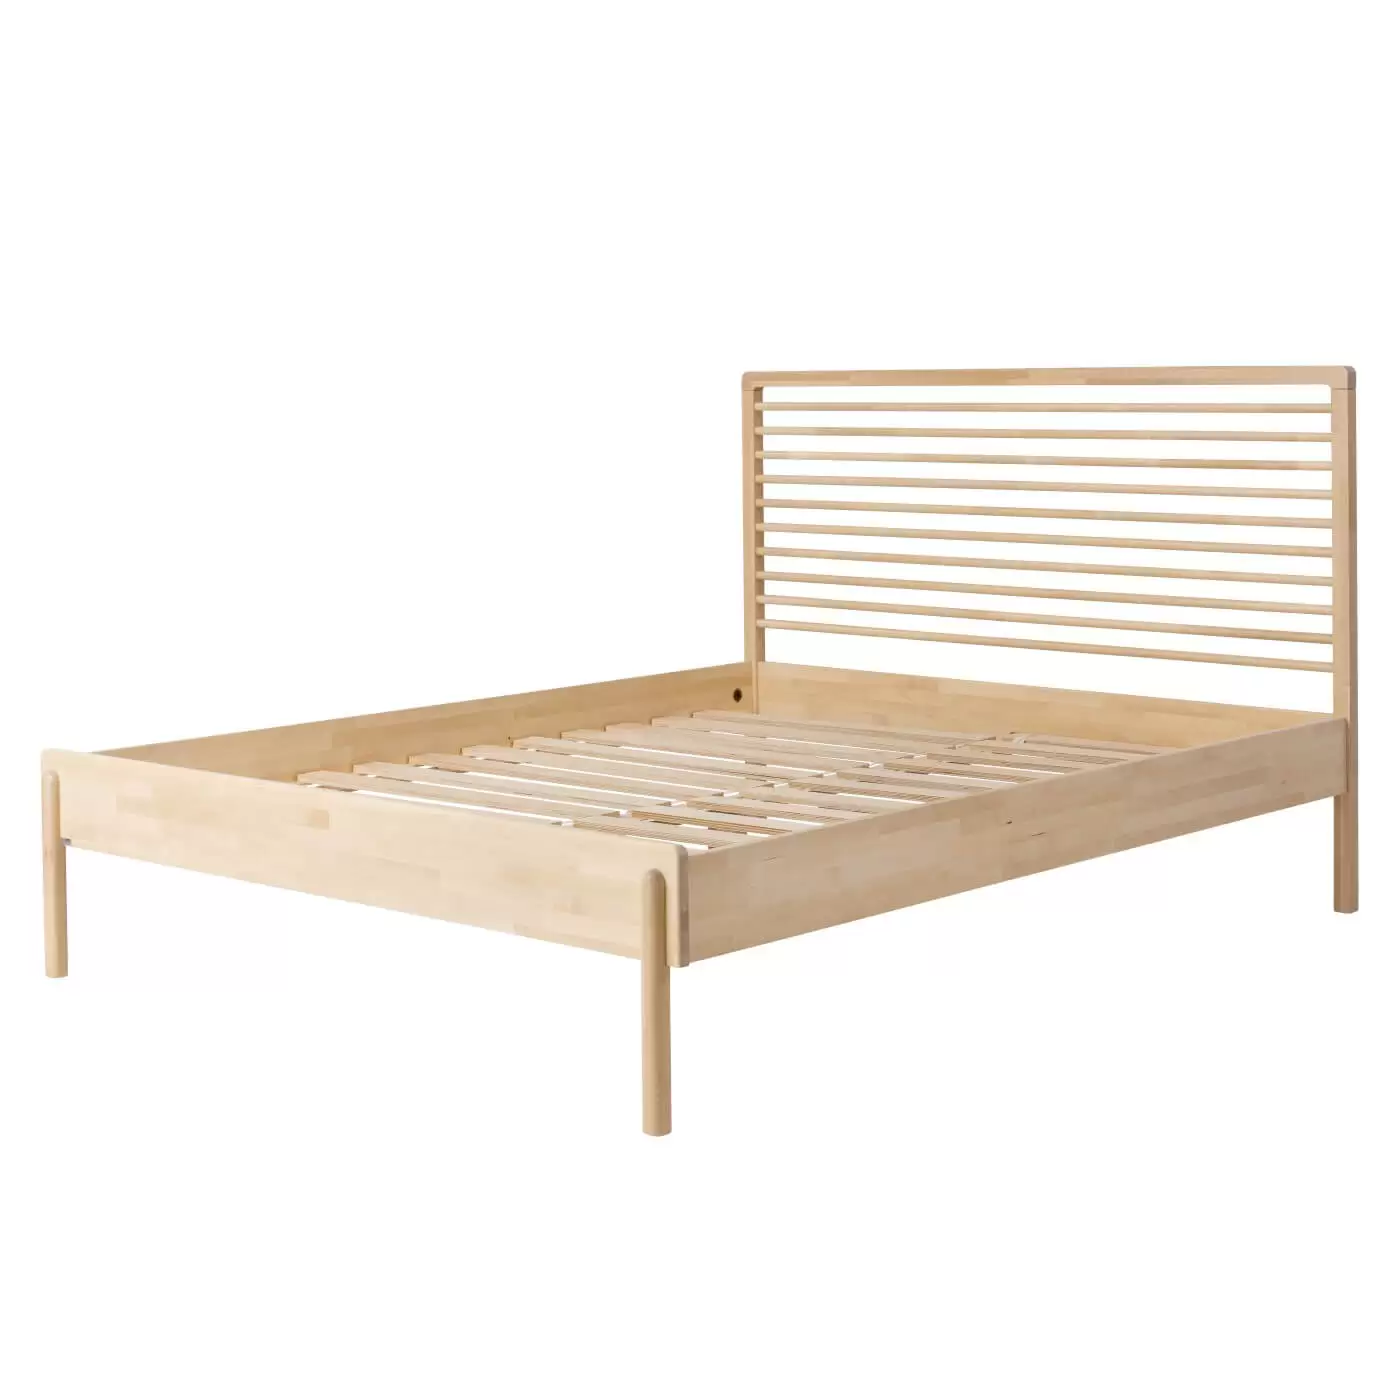 Łóżko design LENNU. Widoczne w całości drewniane łóżko 160x200 bez materaca. Łóżko dwuosobowe do sypialni na wysokich nóżkach z wysokim ażurowym drewnianym szczytem. Nowoczesny design